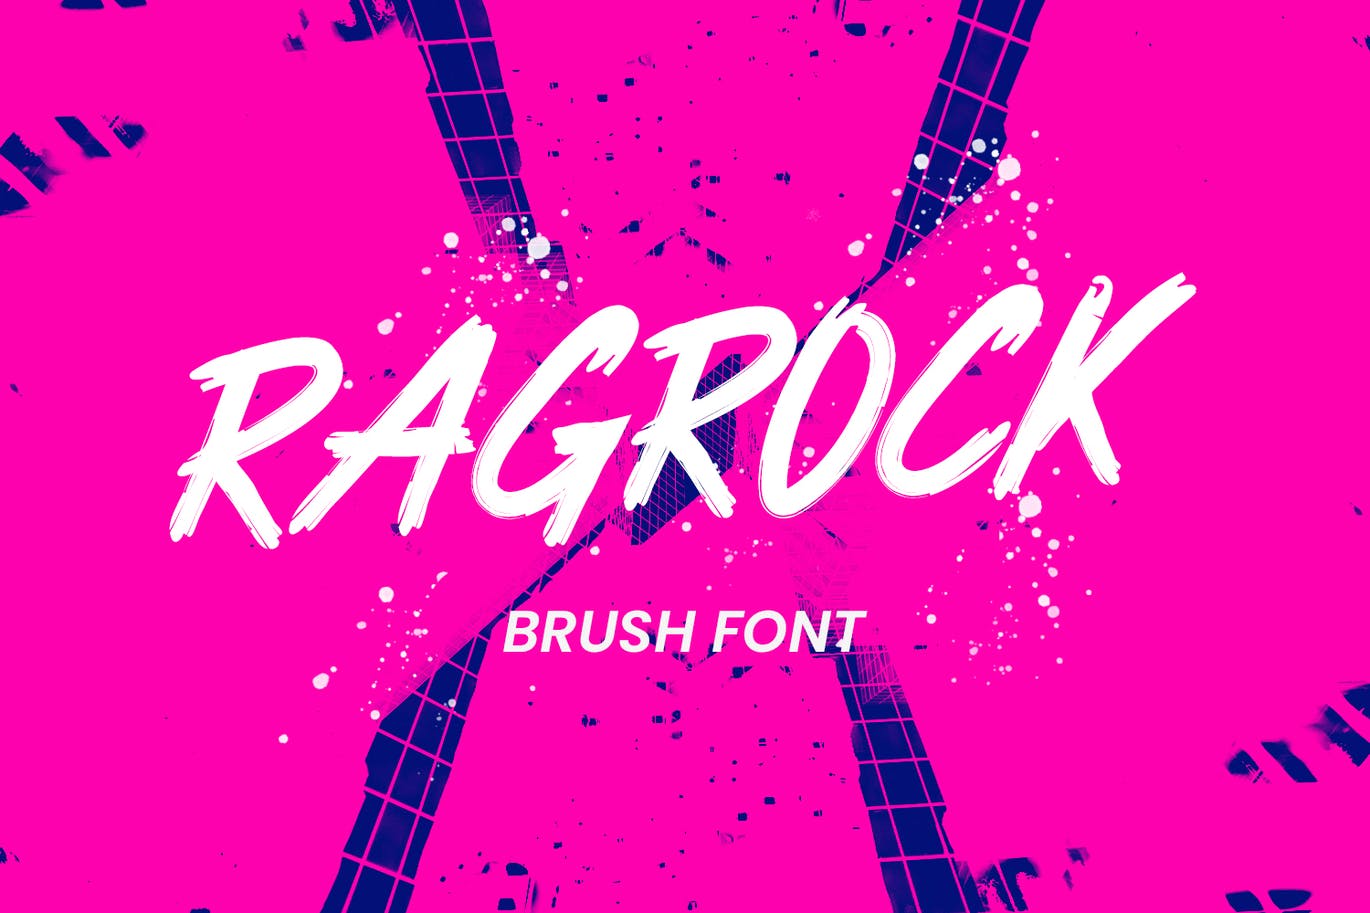 A cool brush font